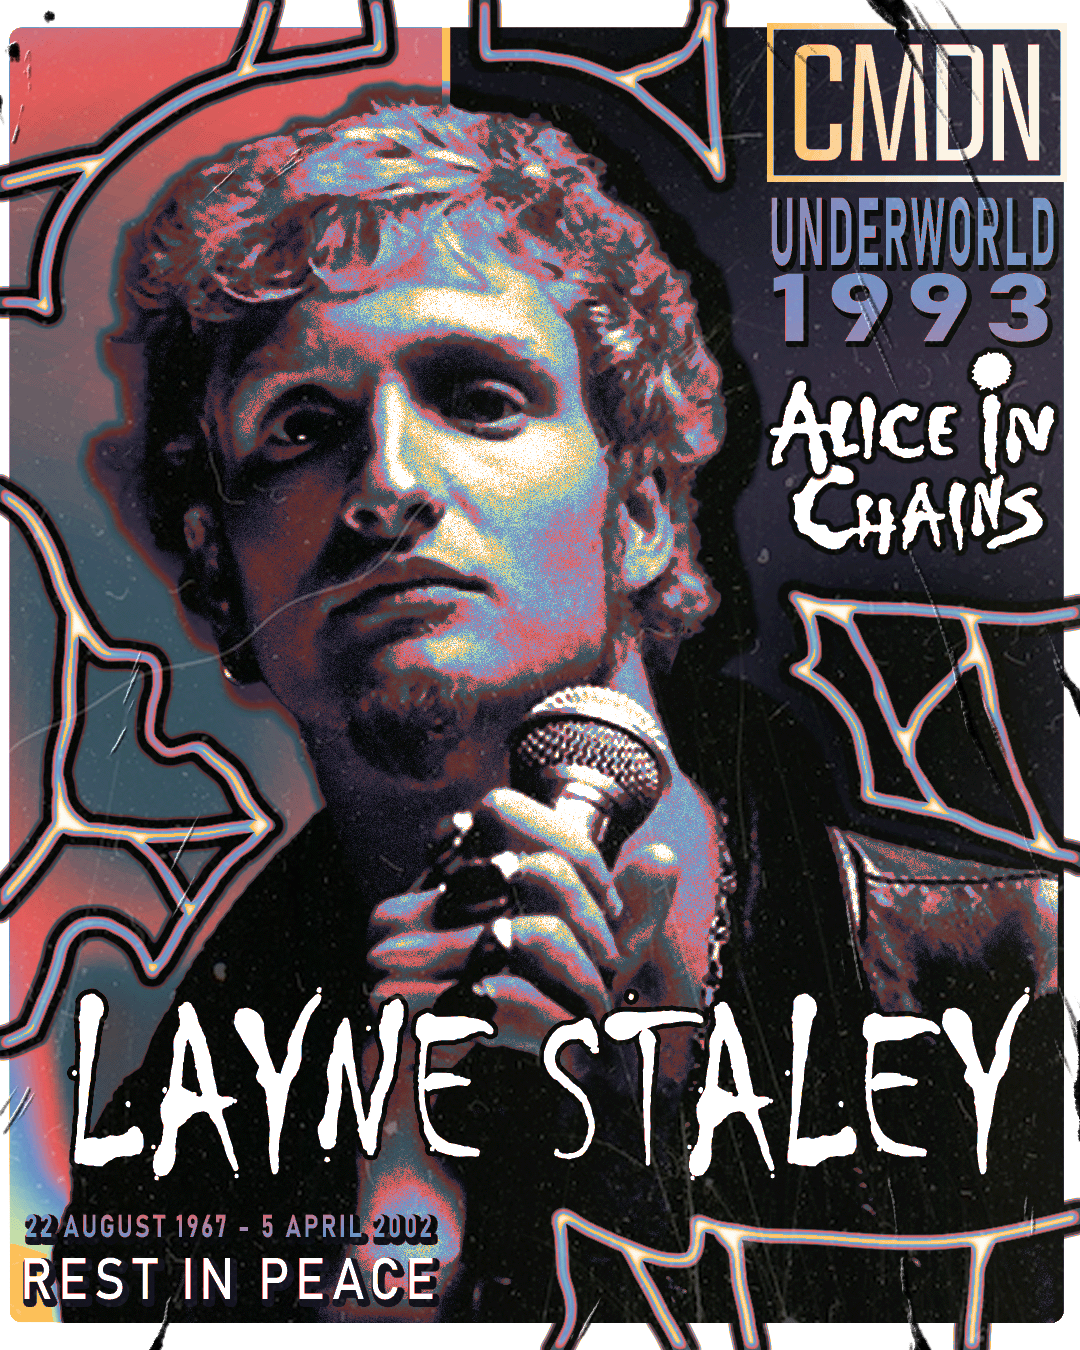 Layne Staley: The Grunge Shaman in Camden 1993